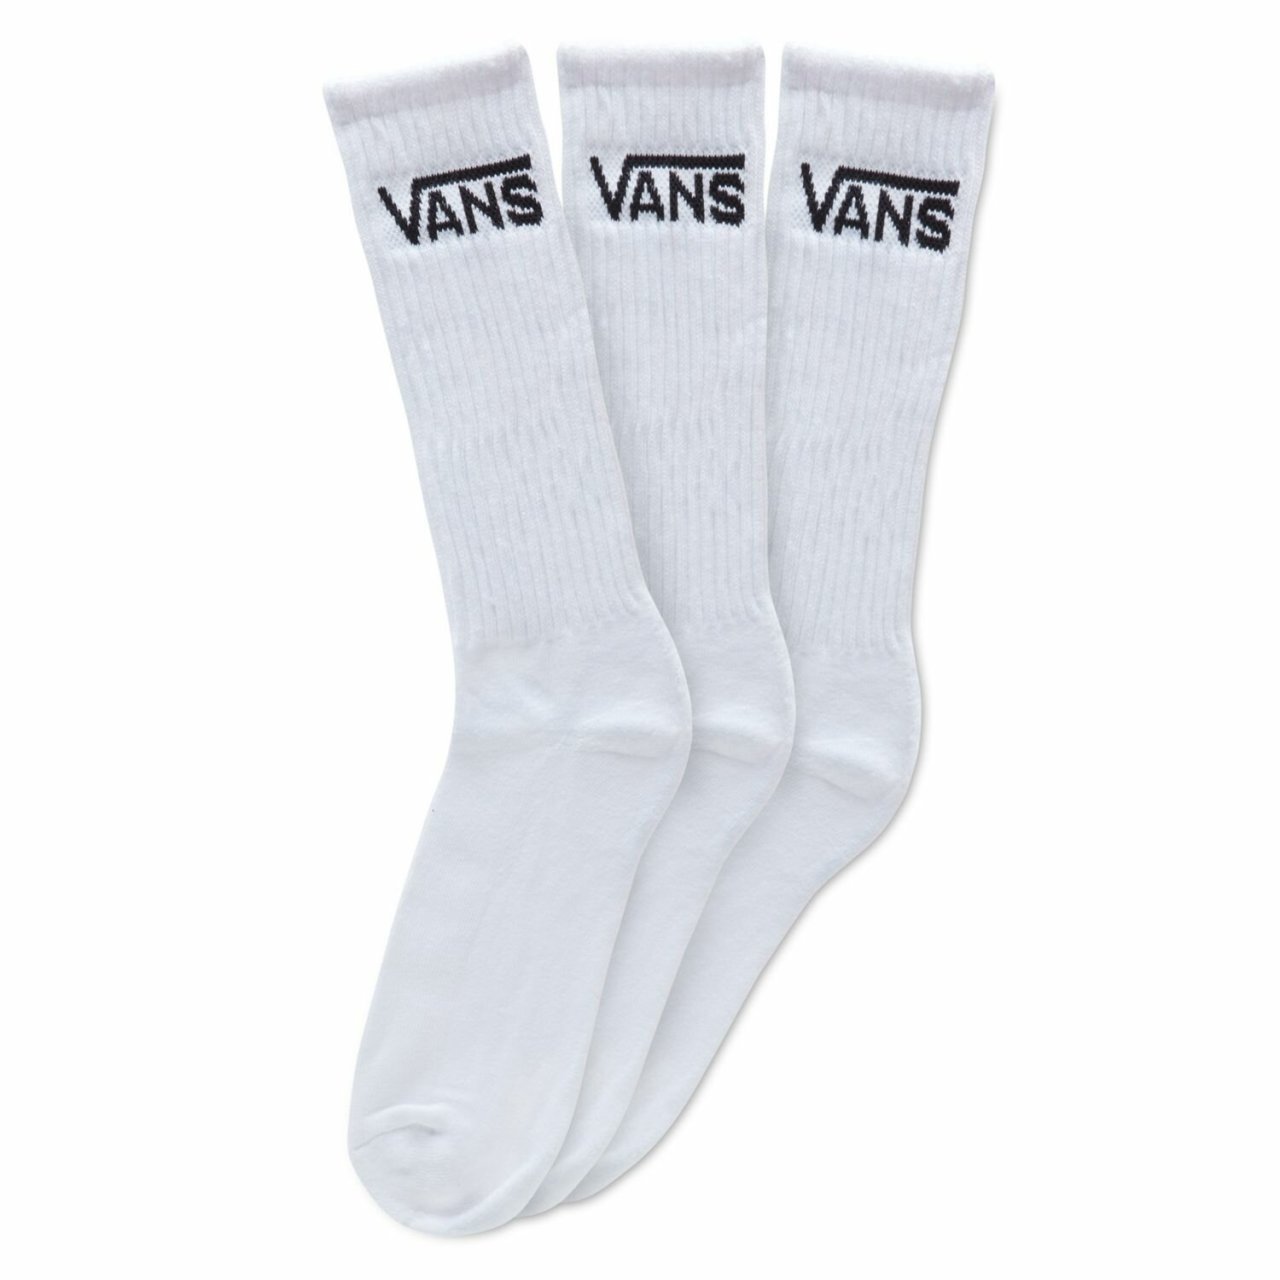 Vans Classic Uzun Çorap Beyaz (3 ÇİFT PK) 38.5-42 Numara